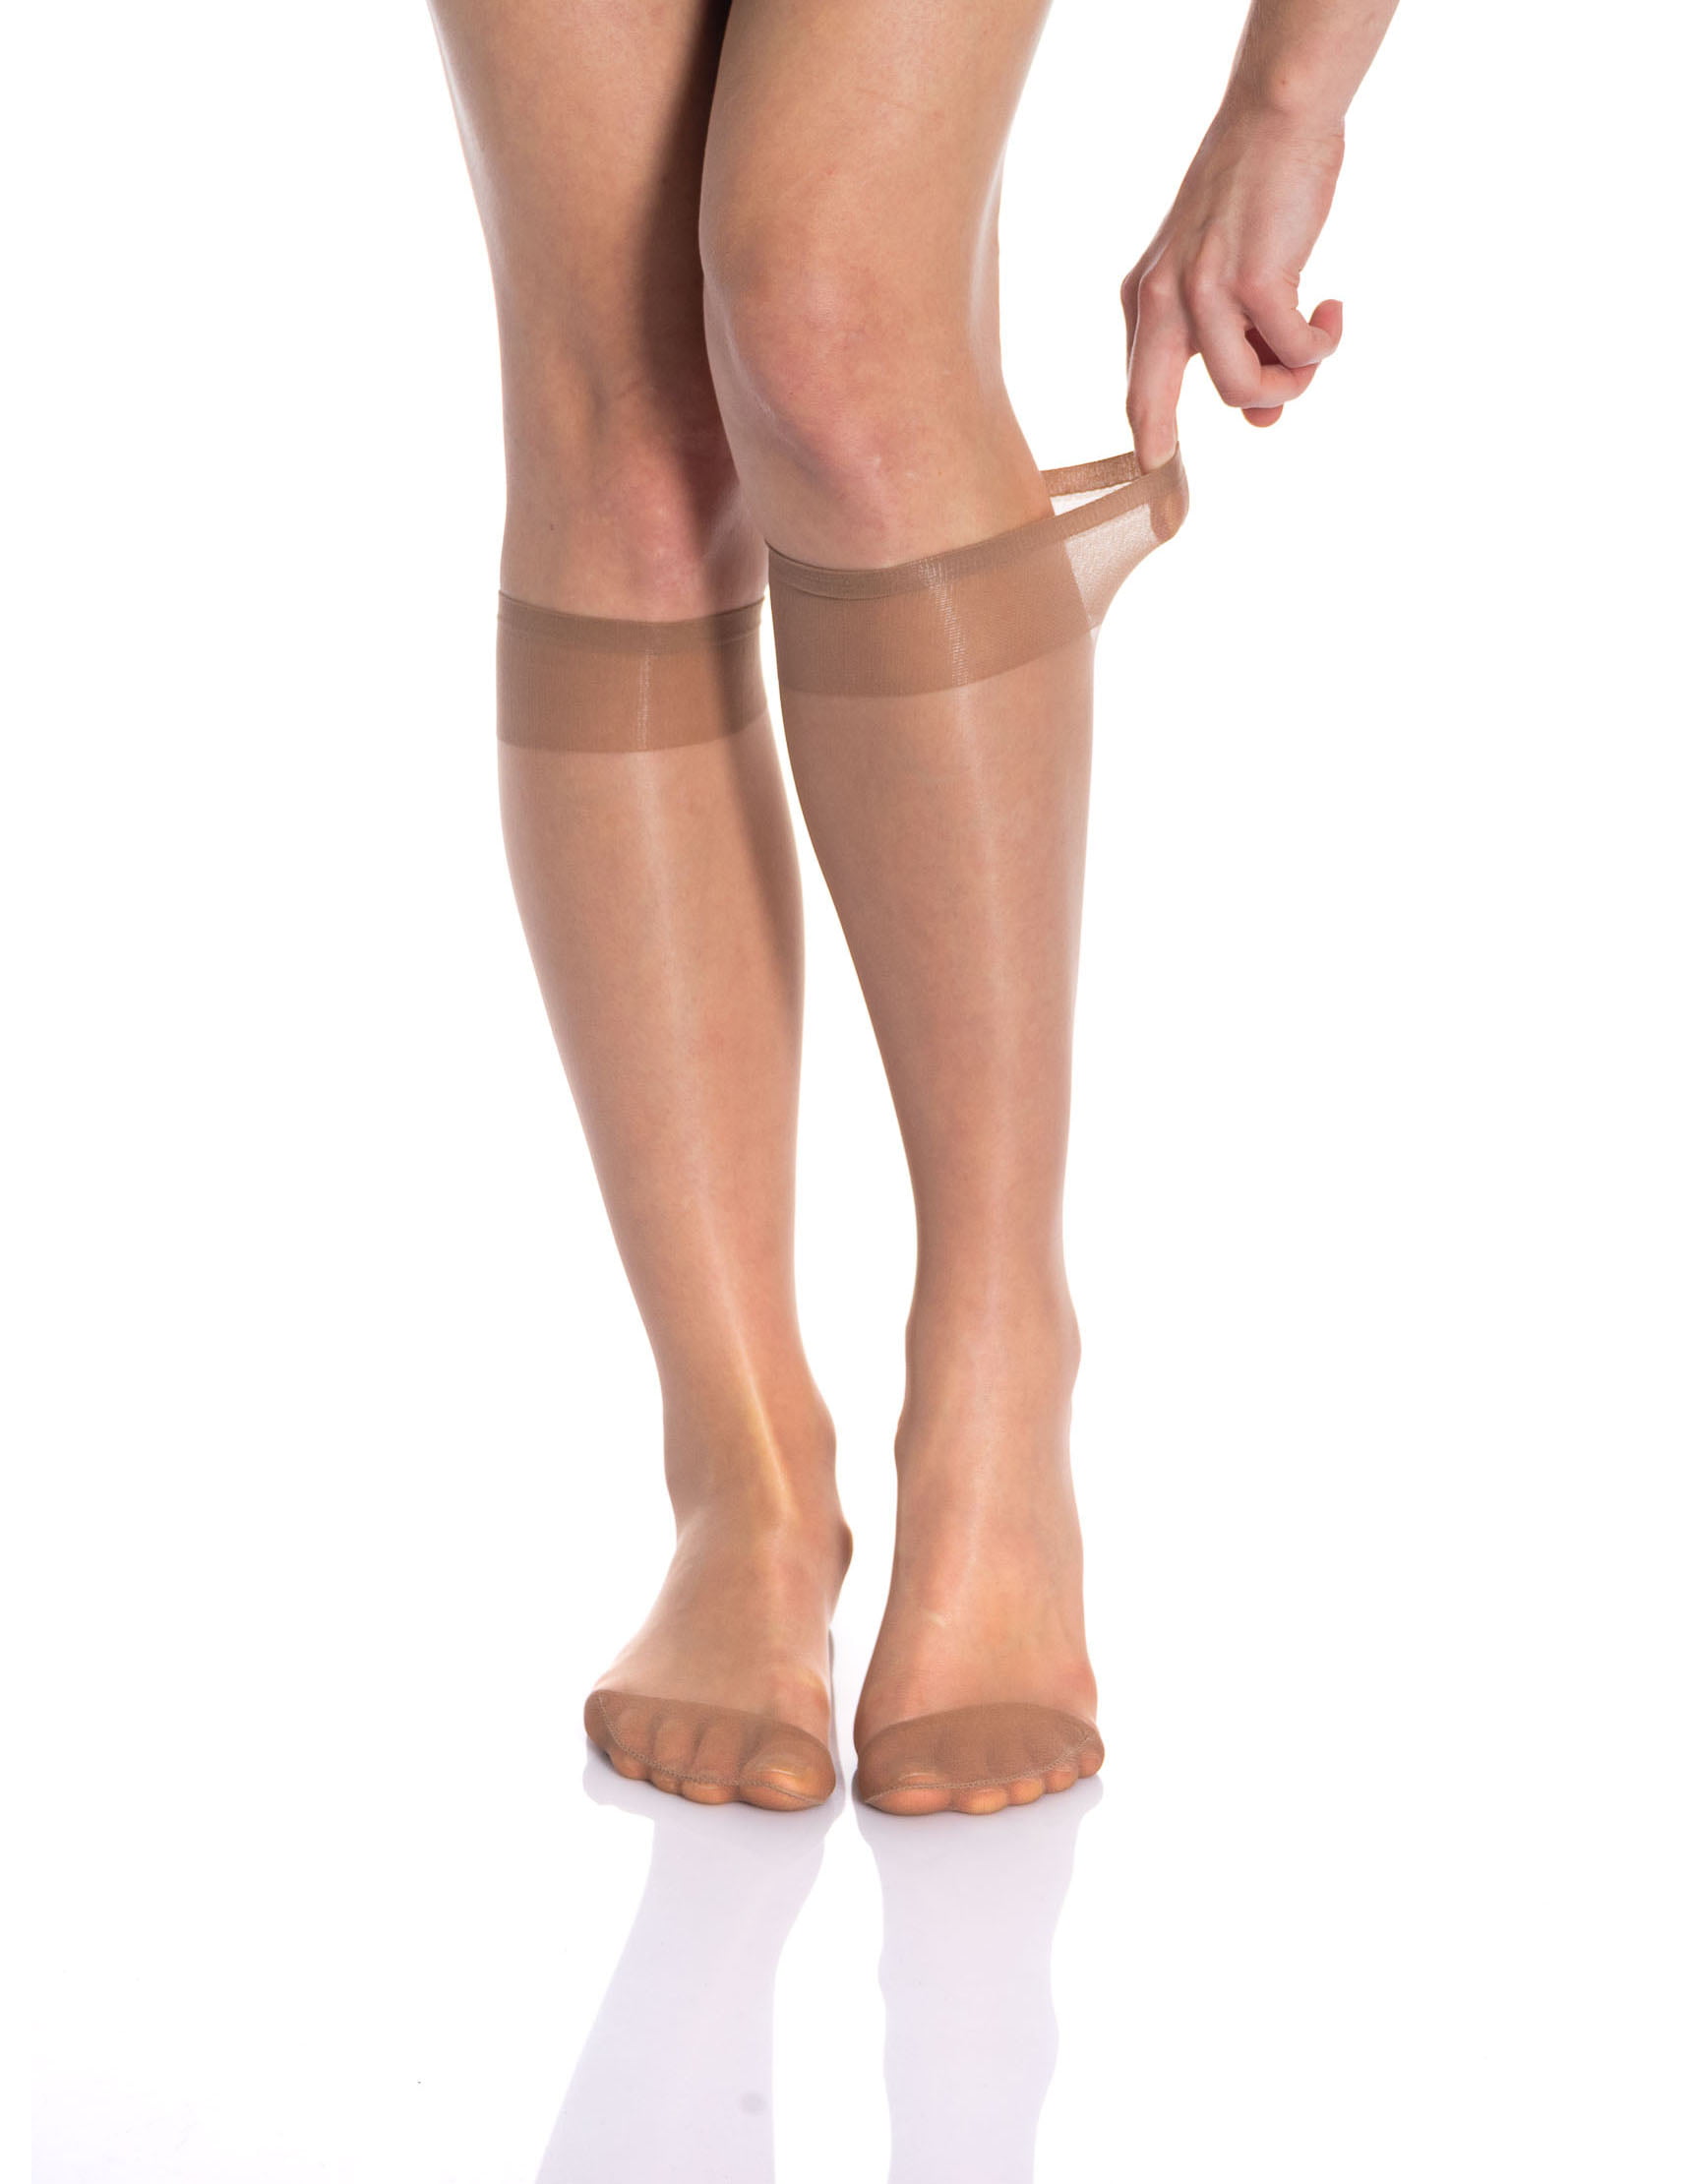 Bronze Flower Patterned Sheer Knee High Socks for Women 3 Pairs Trouser Socks Stockings Stretchy Silk Socks 